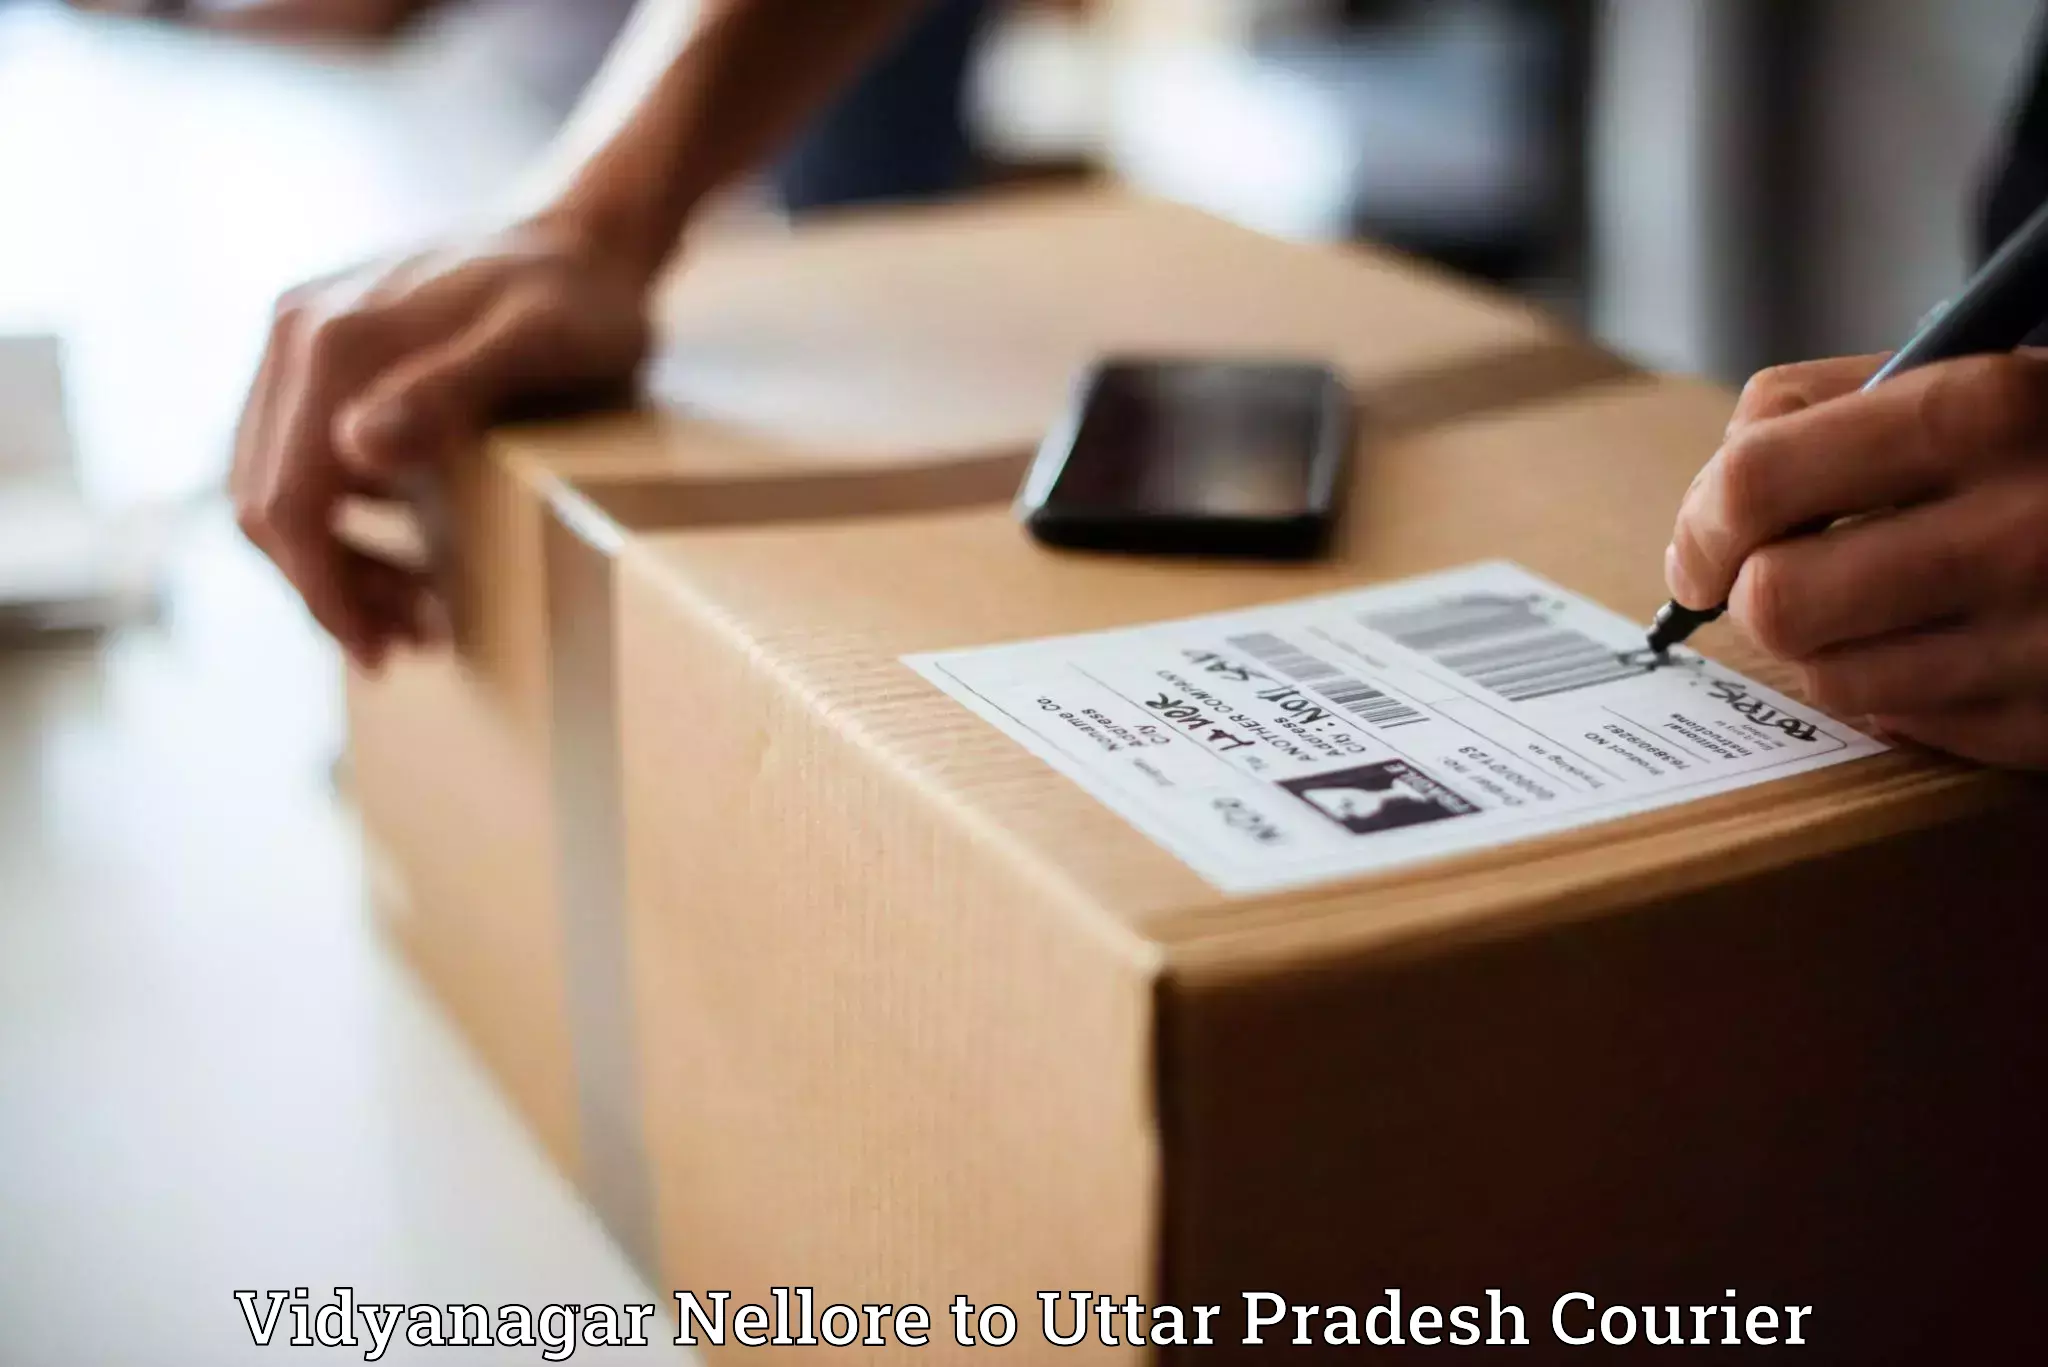 Lightweight parcel options Vidyanagar Nellore to Milak